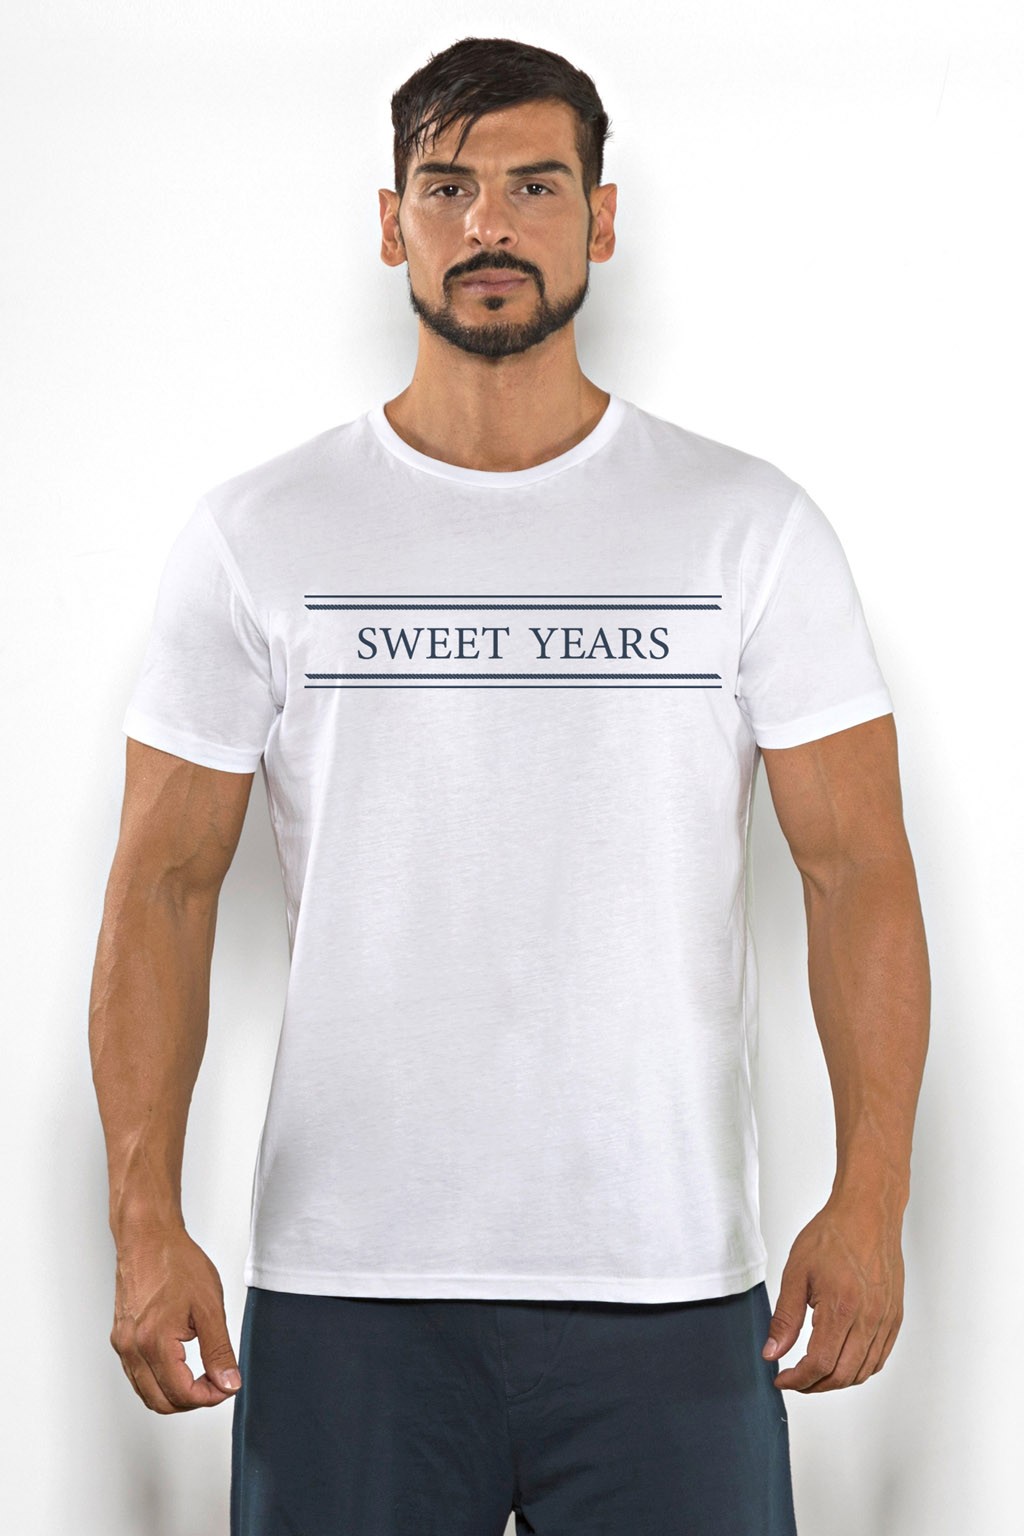 Acquista subito questa t-shirt Sweet Years da uomo in cotone girocollo tinta unita con scritta stampata sul petto.